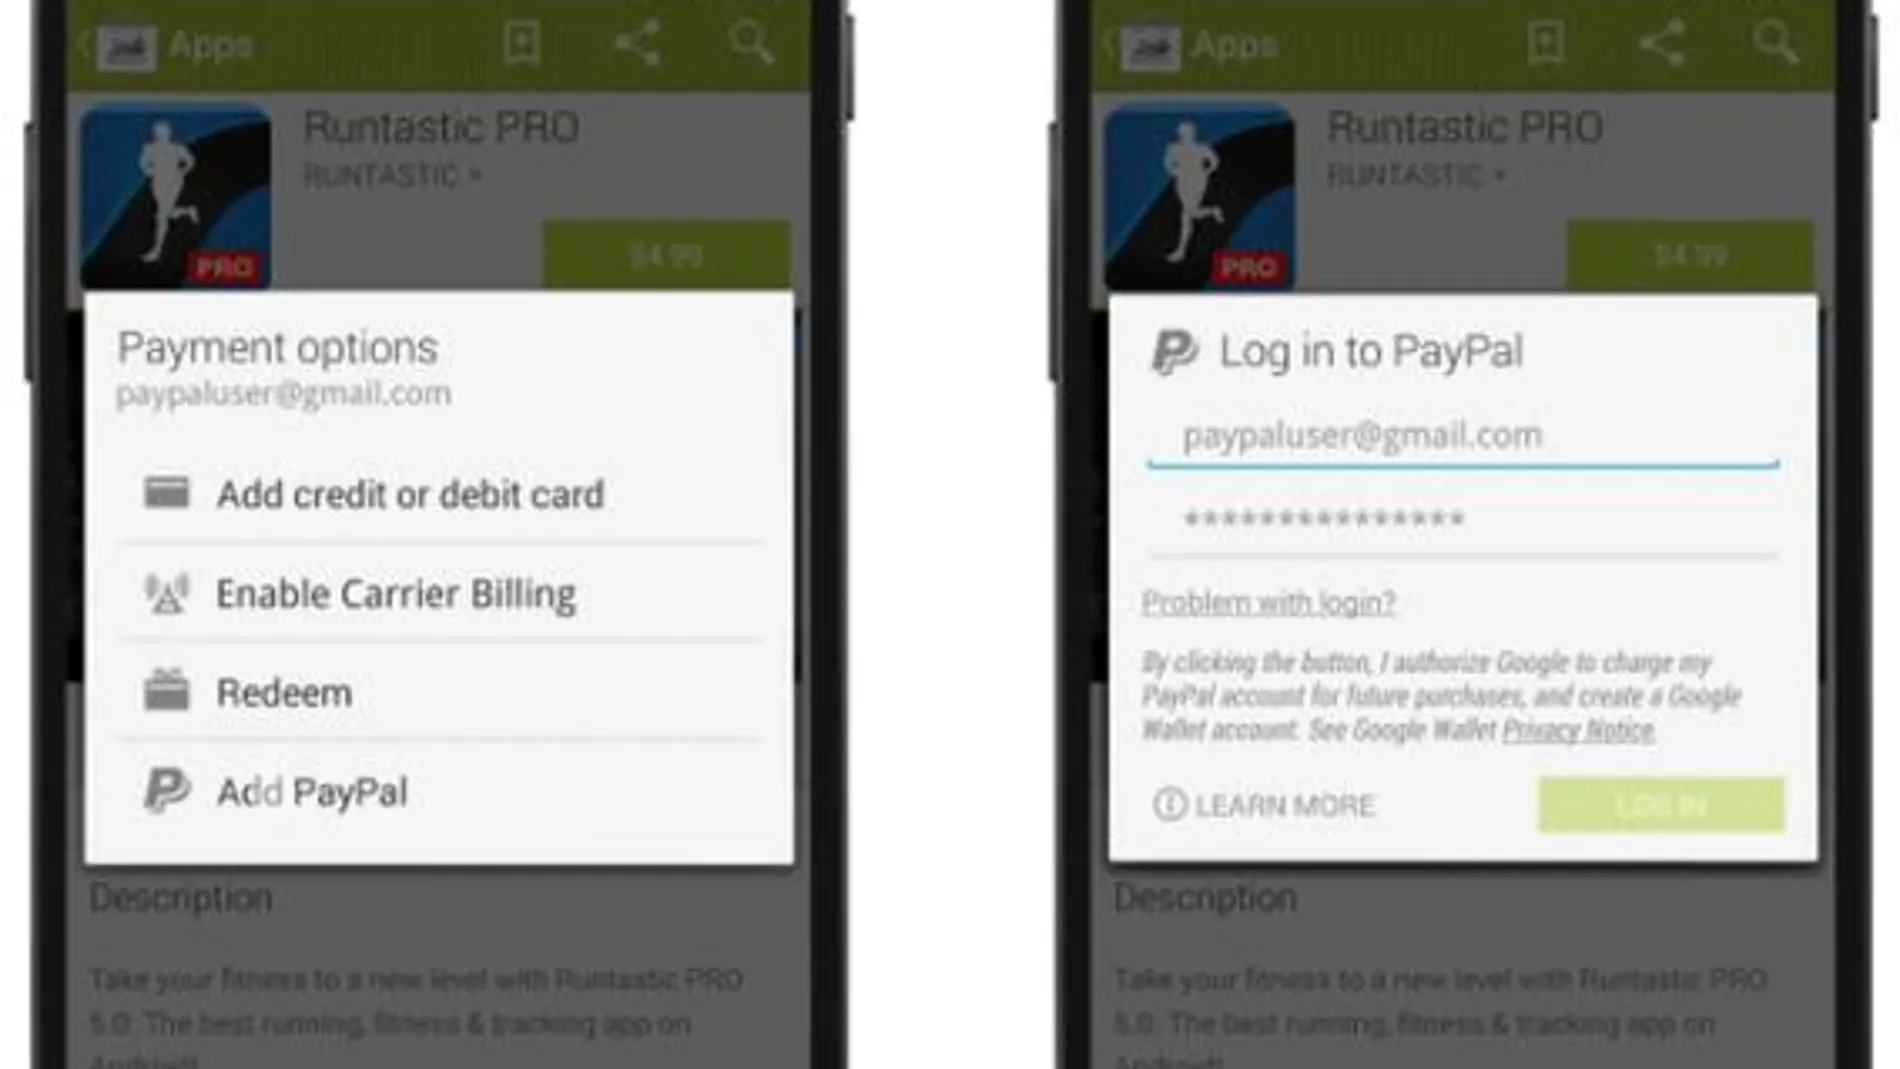 Comprar aplicaciones en Google Play y pagar con PayPal ya es posible